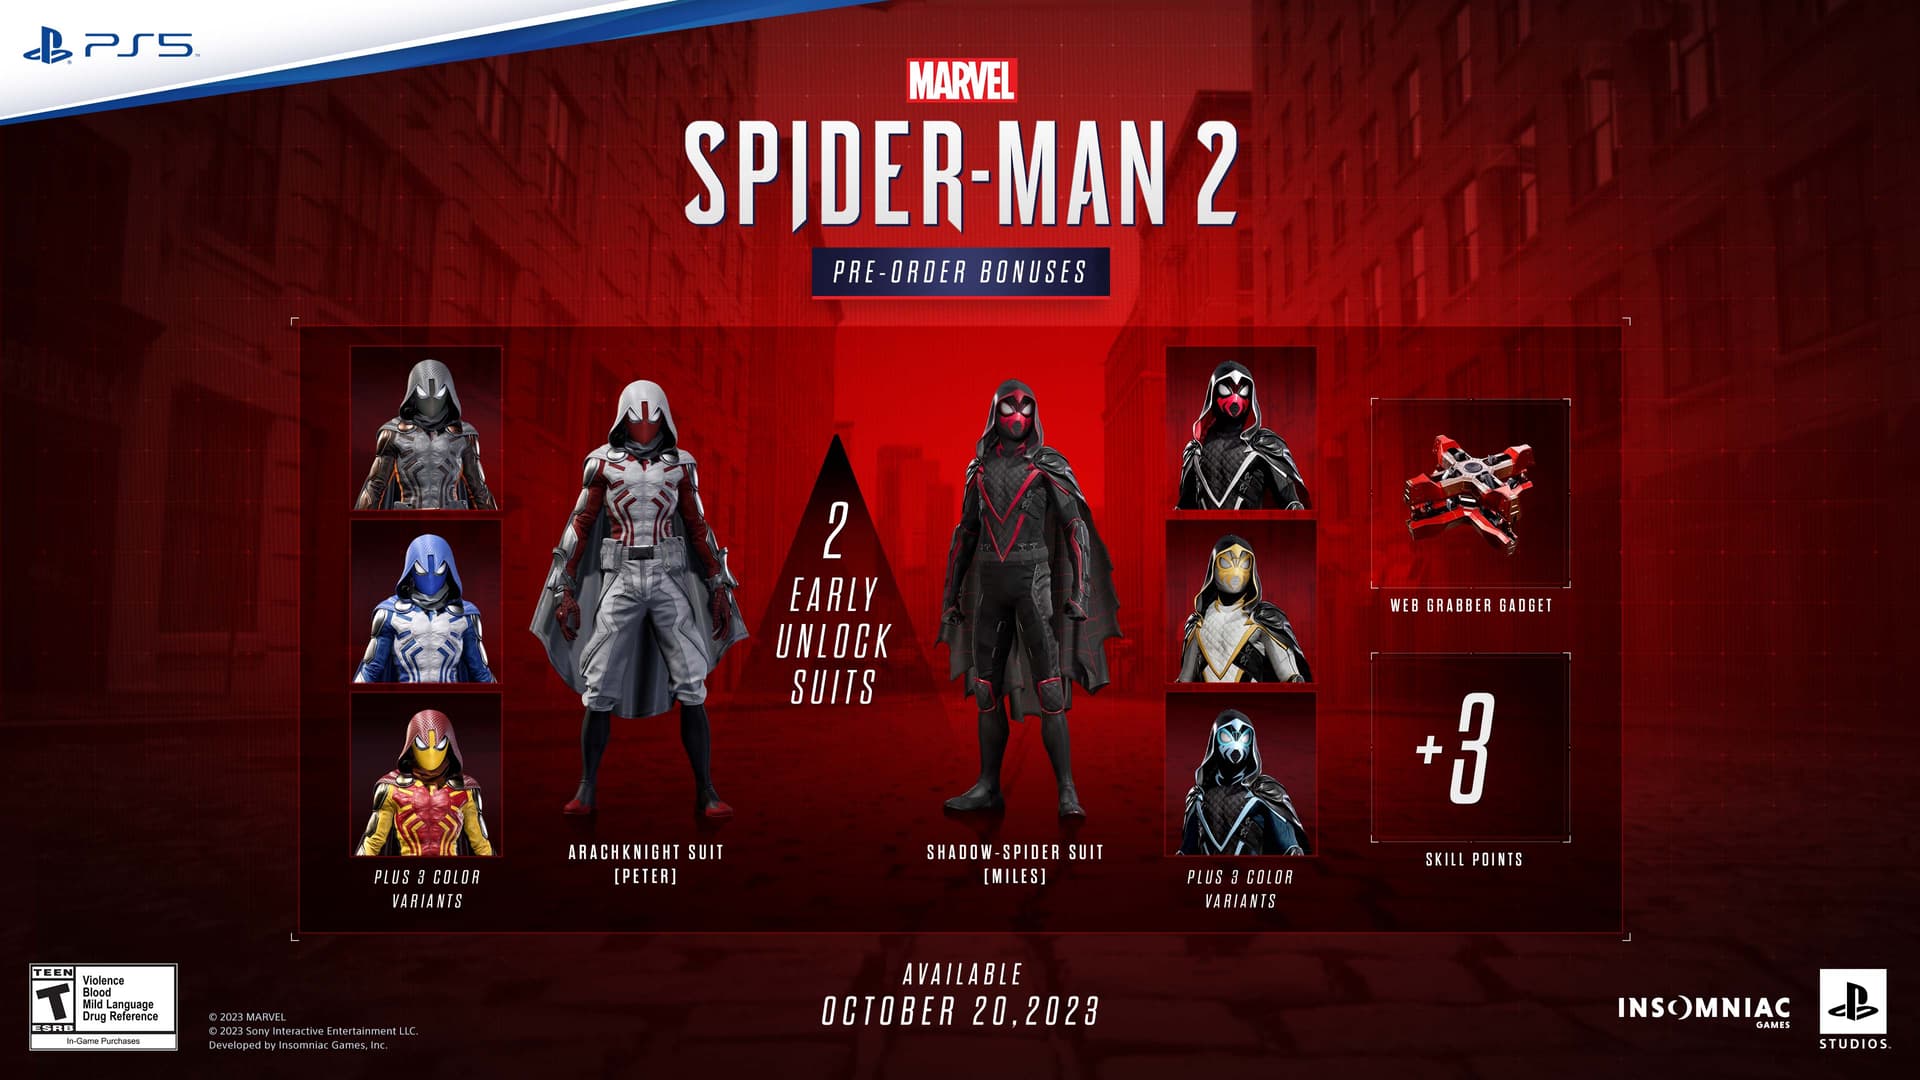 Marvel’s Spider-Man 2 Arrives Only on PS5 October 20